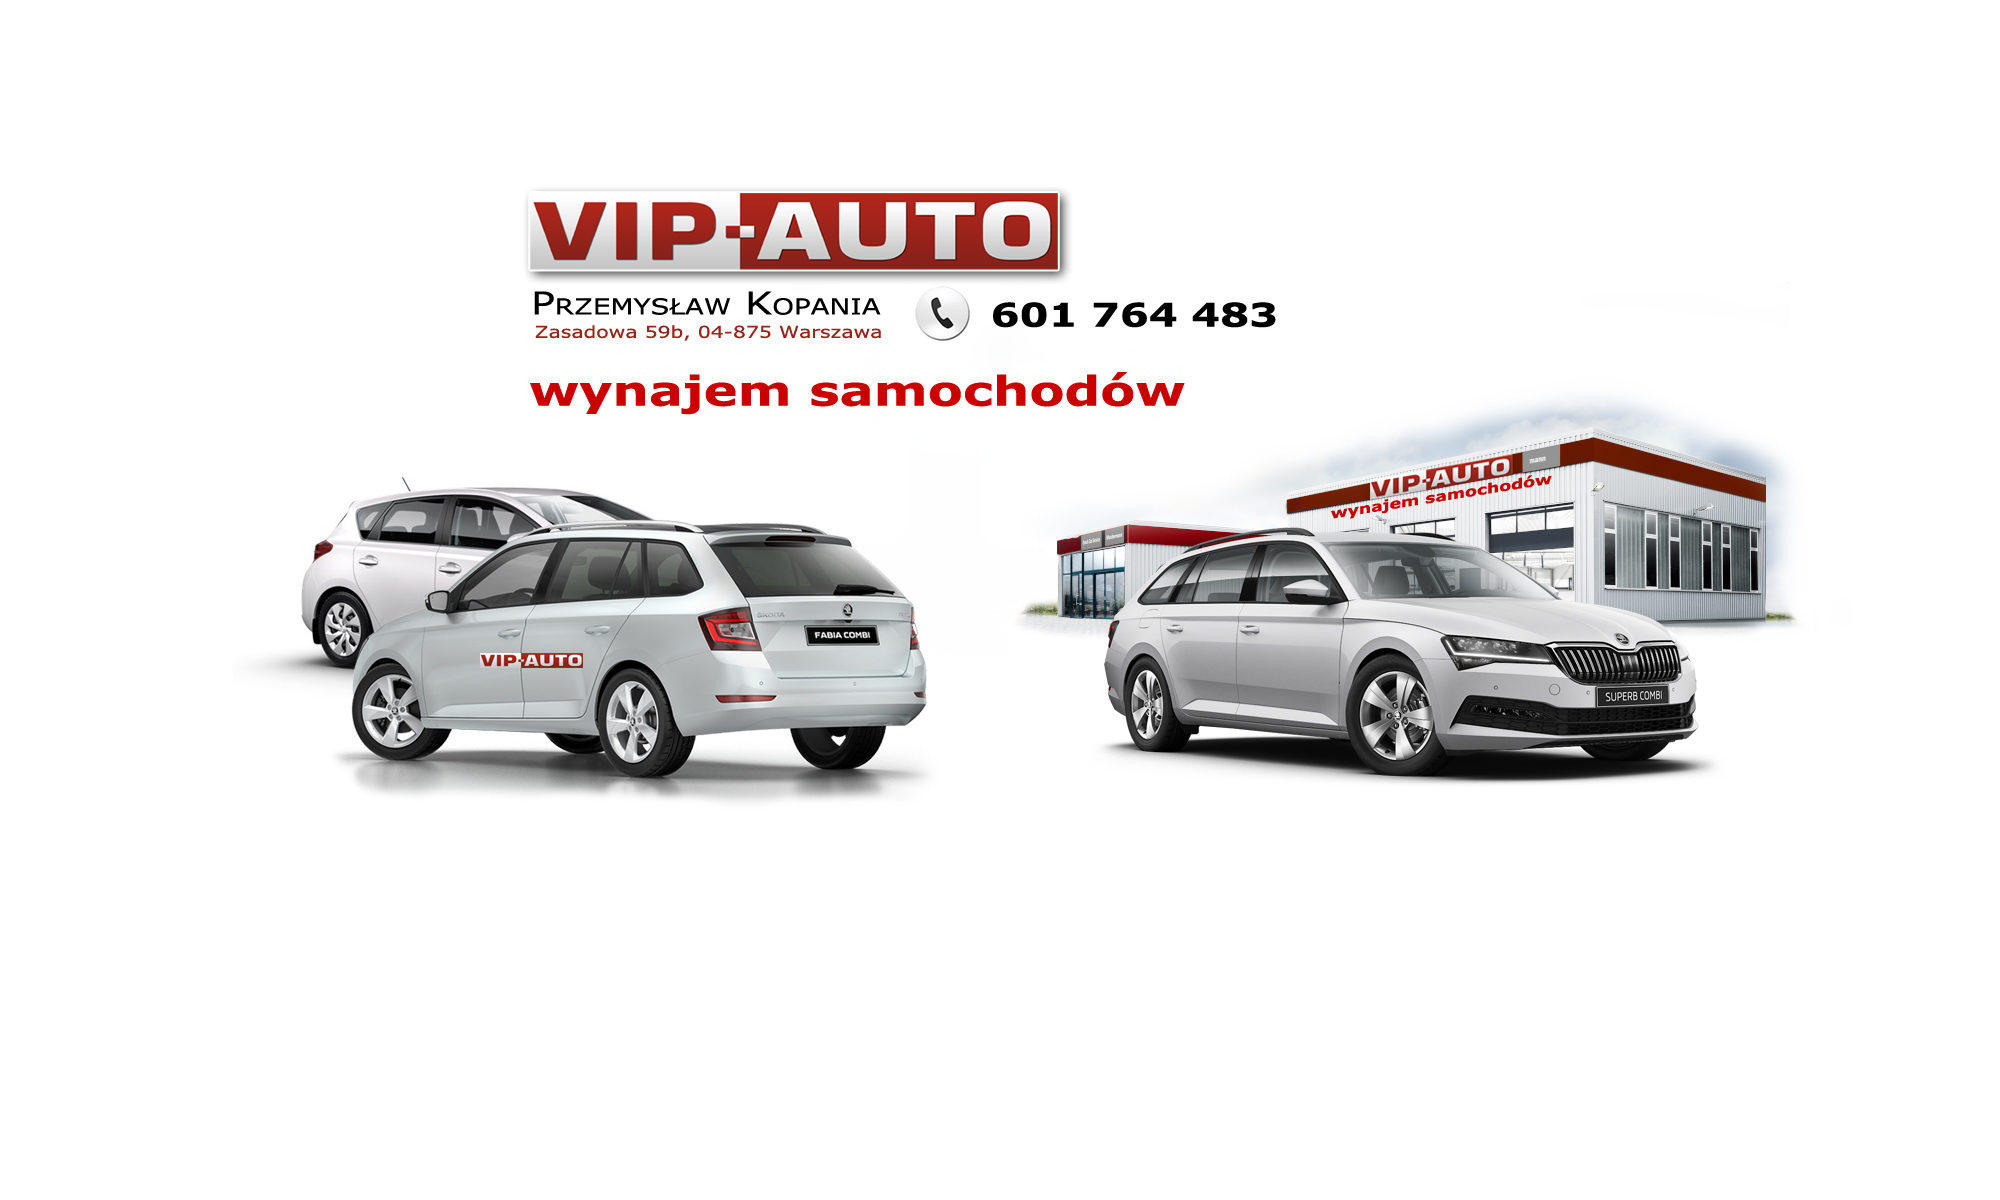 VIP-AUTO Wynajem Samochodów